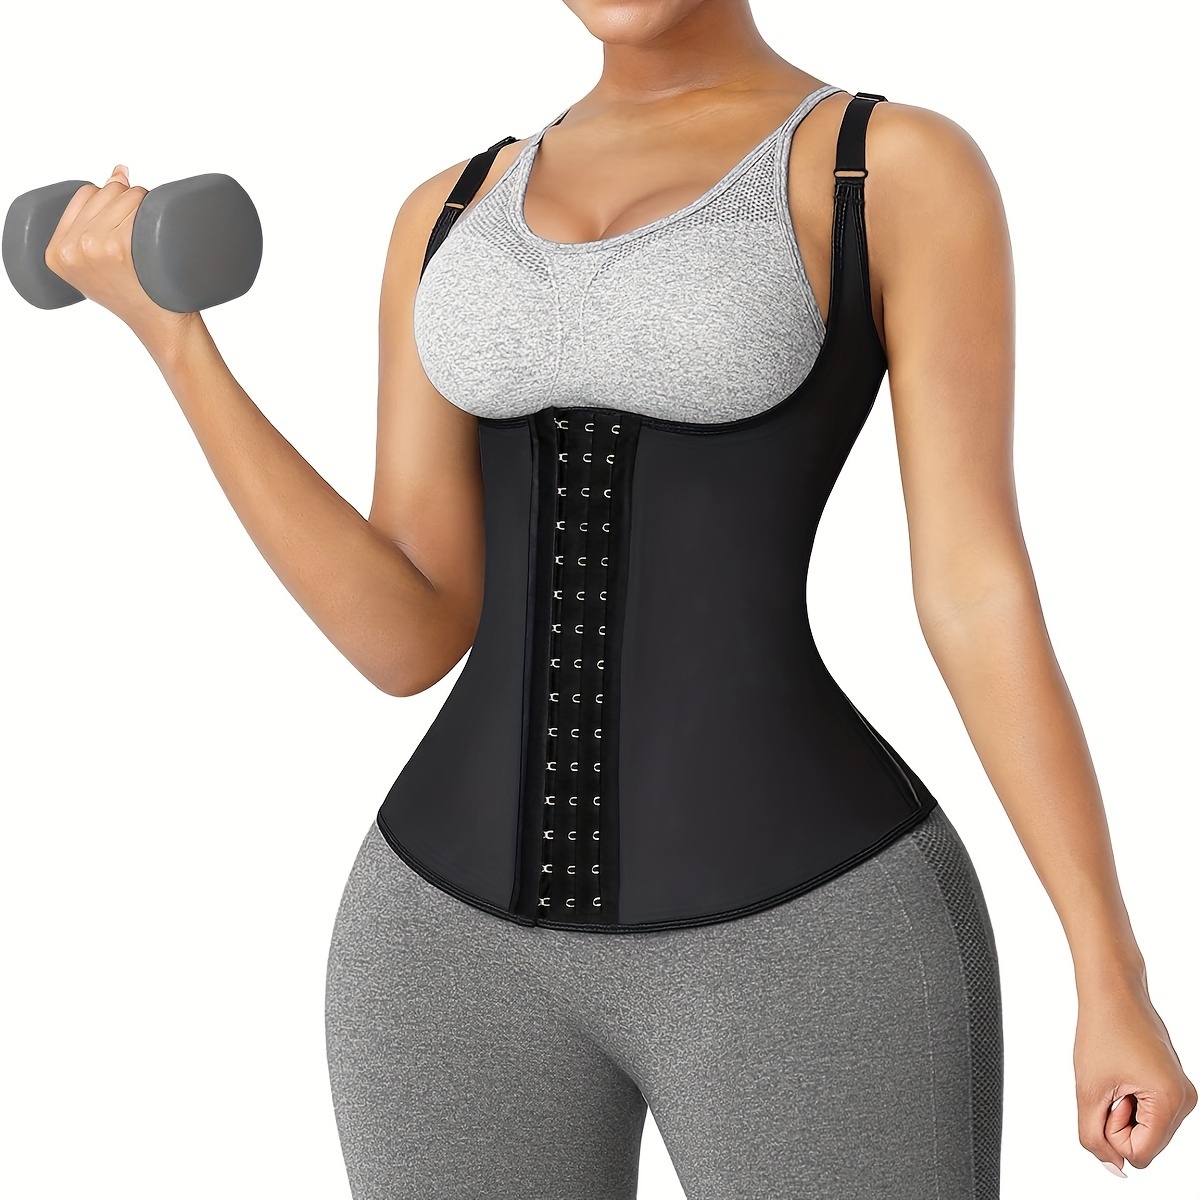 Latex Waist Trainer Lower Stomach Corset For Women Zipper